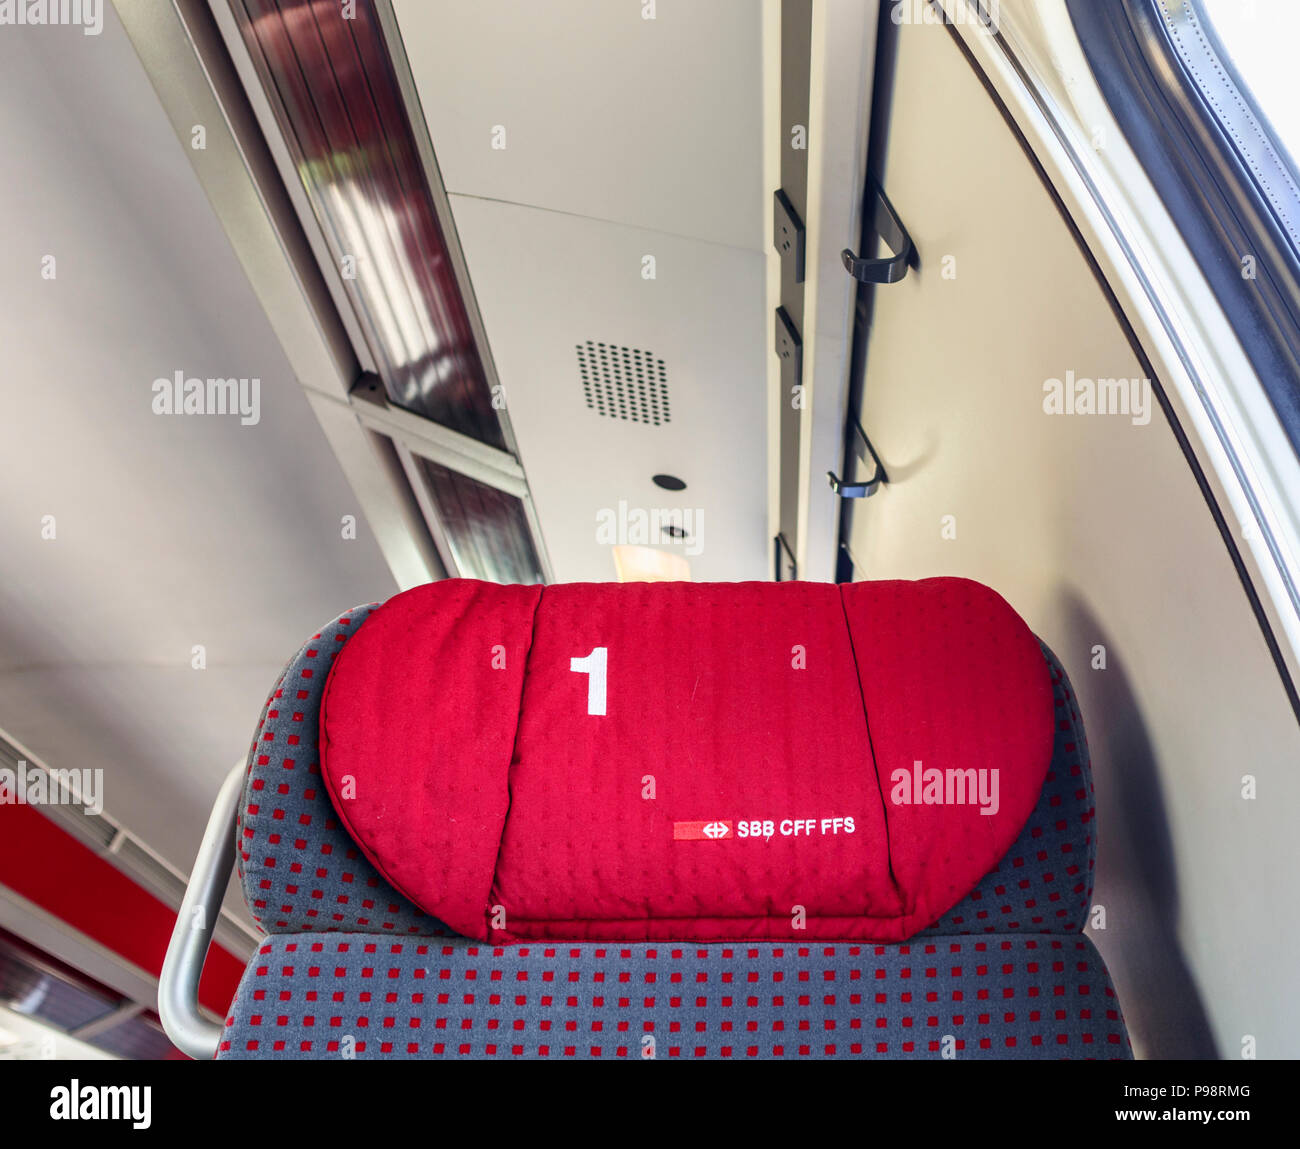 Schweizerische Bundesbahnen (SBB CFF FFS) Kopfstütze Kissen auf einen Sitzplatz in einem Zug in die erste Klasse Abteil der Eisenbahnwagen Stockfoto